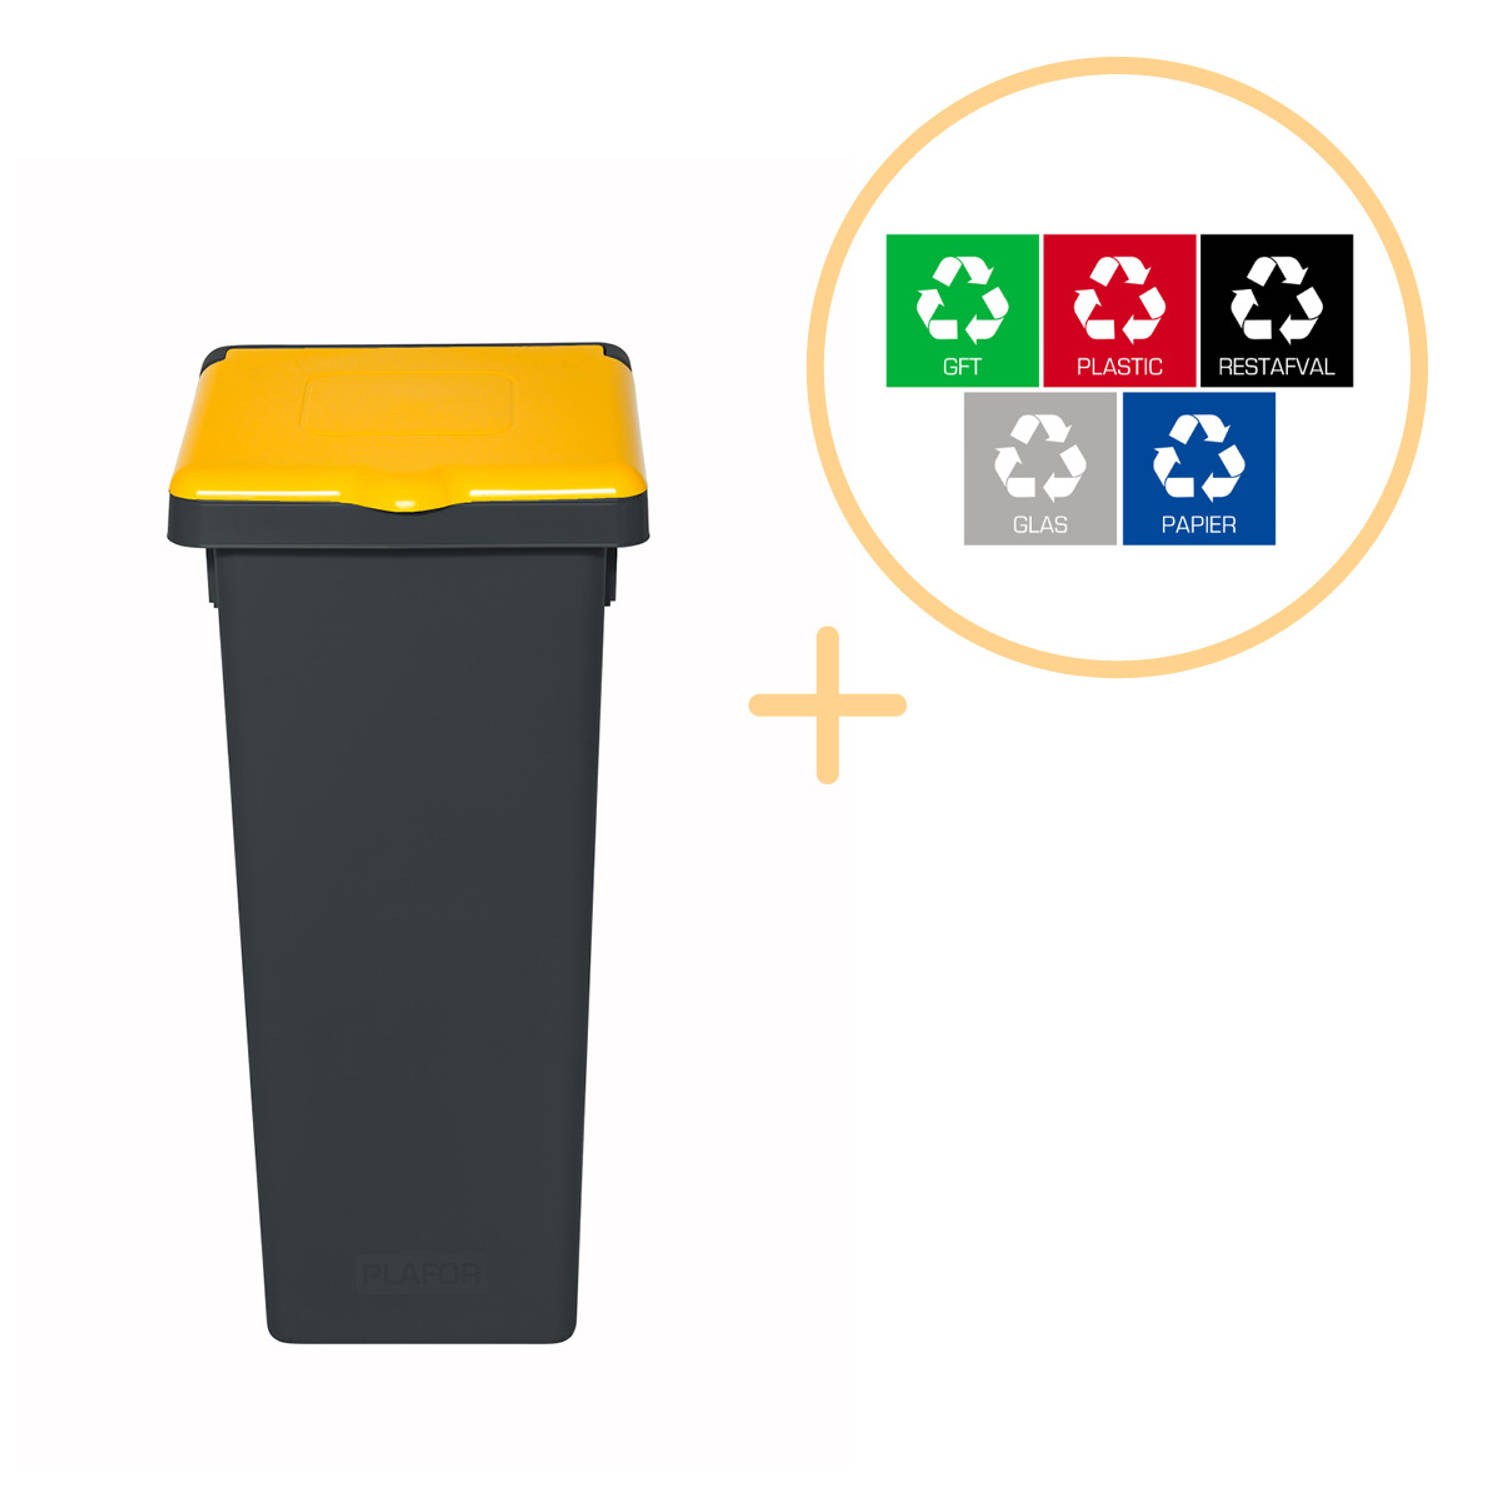 Plafor Fit Bin, Prullenbak met Deksel voor Afvalscheiding - 53L – Grijs/Geel- Inclusief 5-delige Stickerset - Afvalbak voor gemakkelijk Afval Scheiden en Recycling - Afvalemmer - V